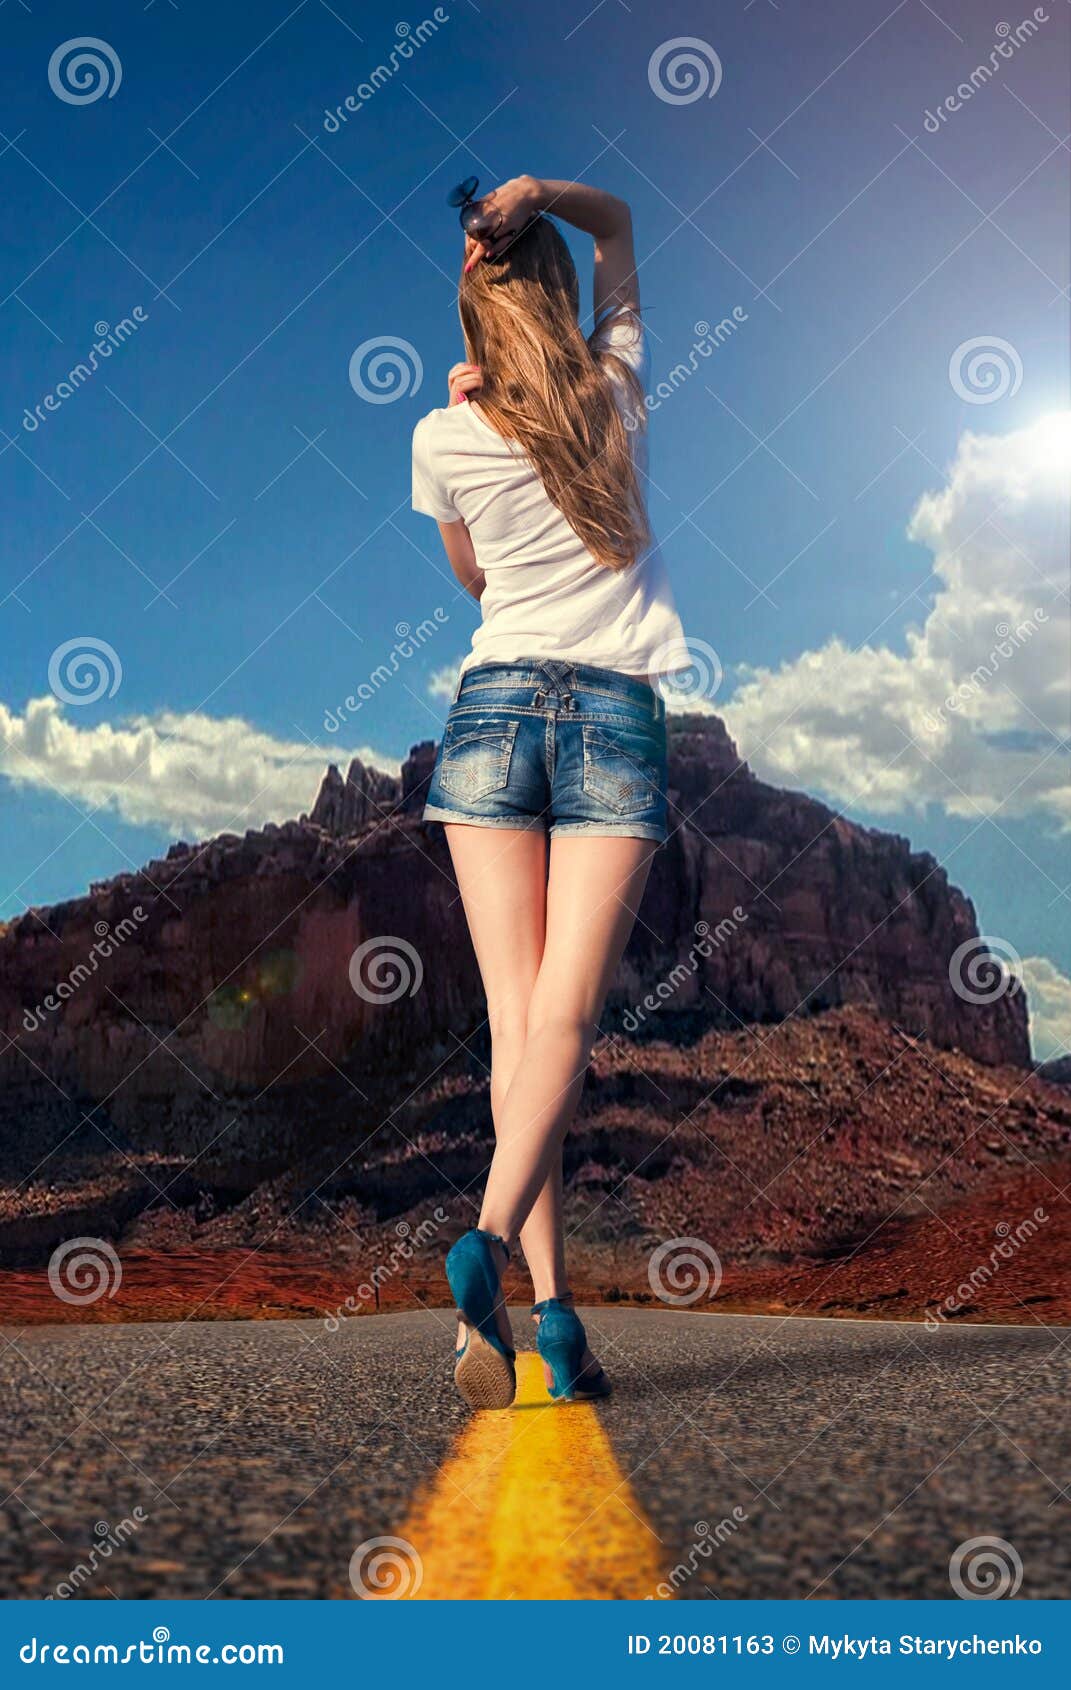 girl walking along the road in the desert